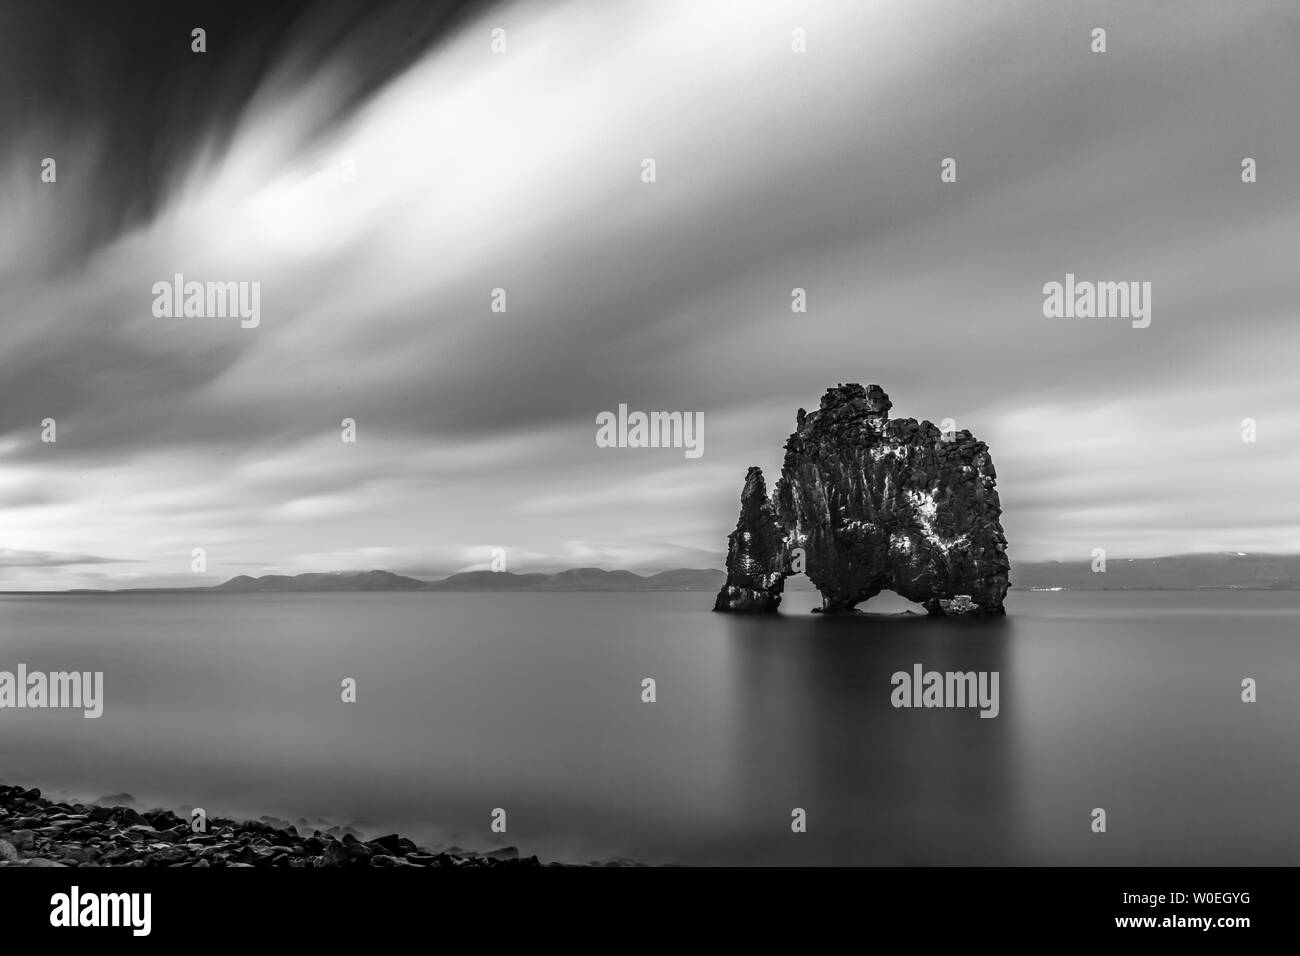 Photographie noir et blanc photographie exposition longue, 377 s, de la célèbre rocher de Hvitserkur, du nord de l'Islande. Pris dans l'été à l'heure bleue. Nuages de Nice, flou, contraste doux figure imaginaire Banque D'Images